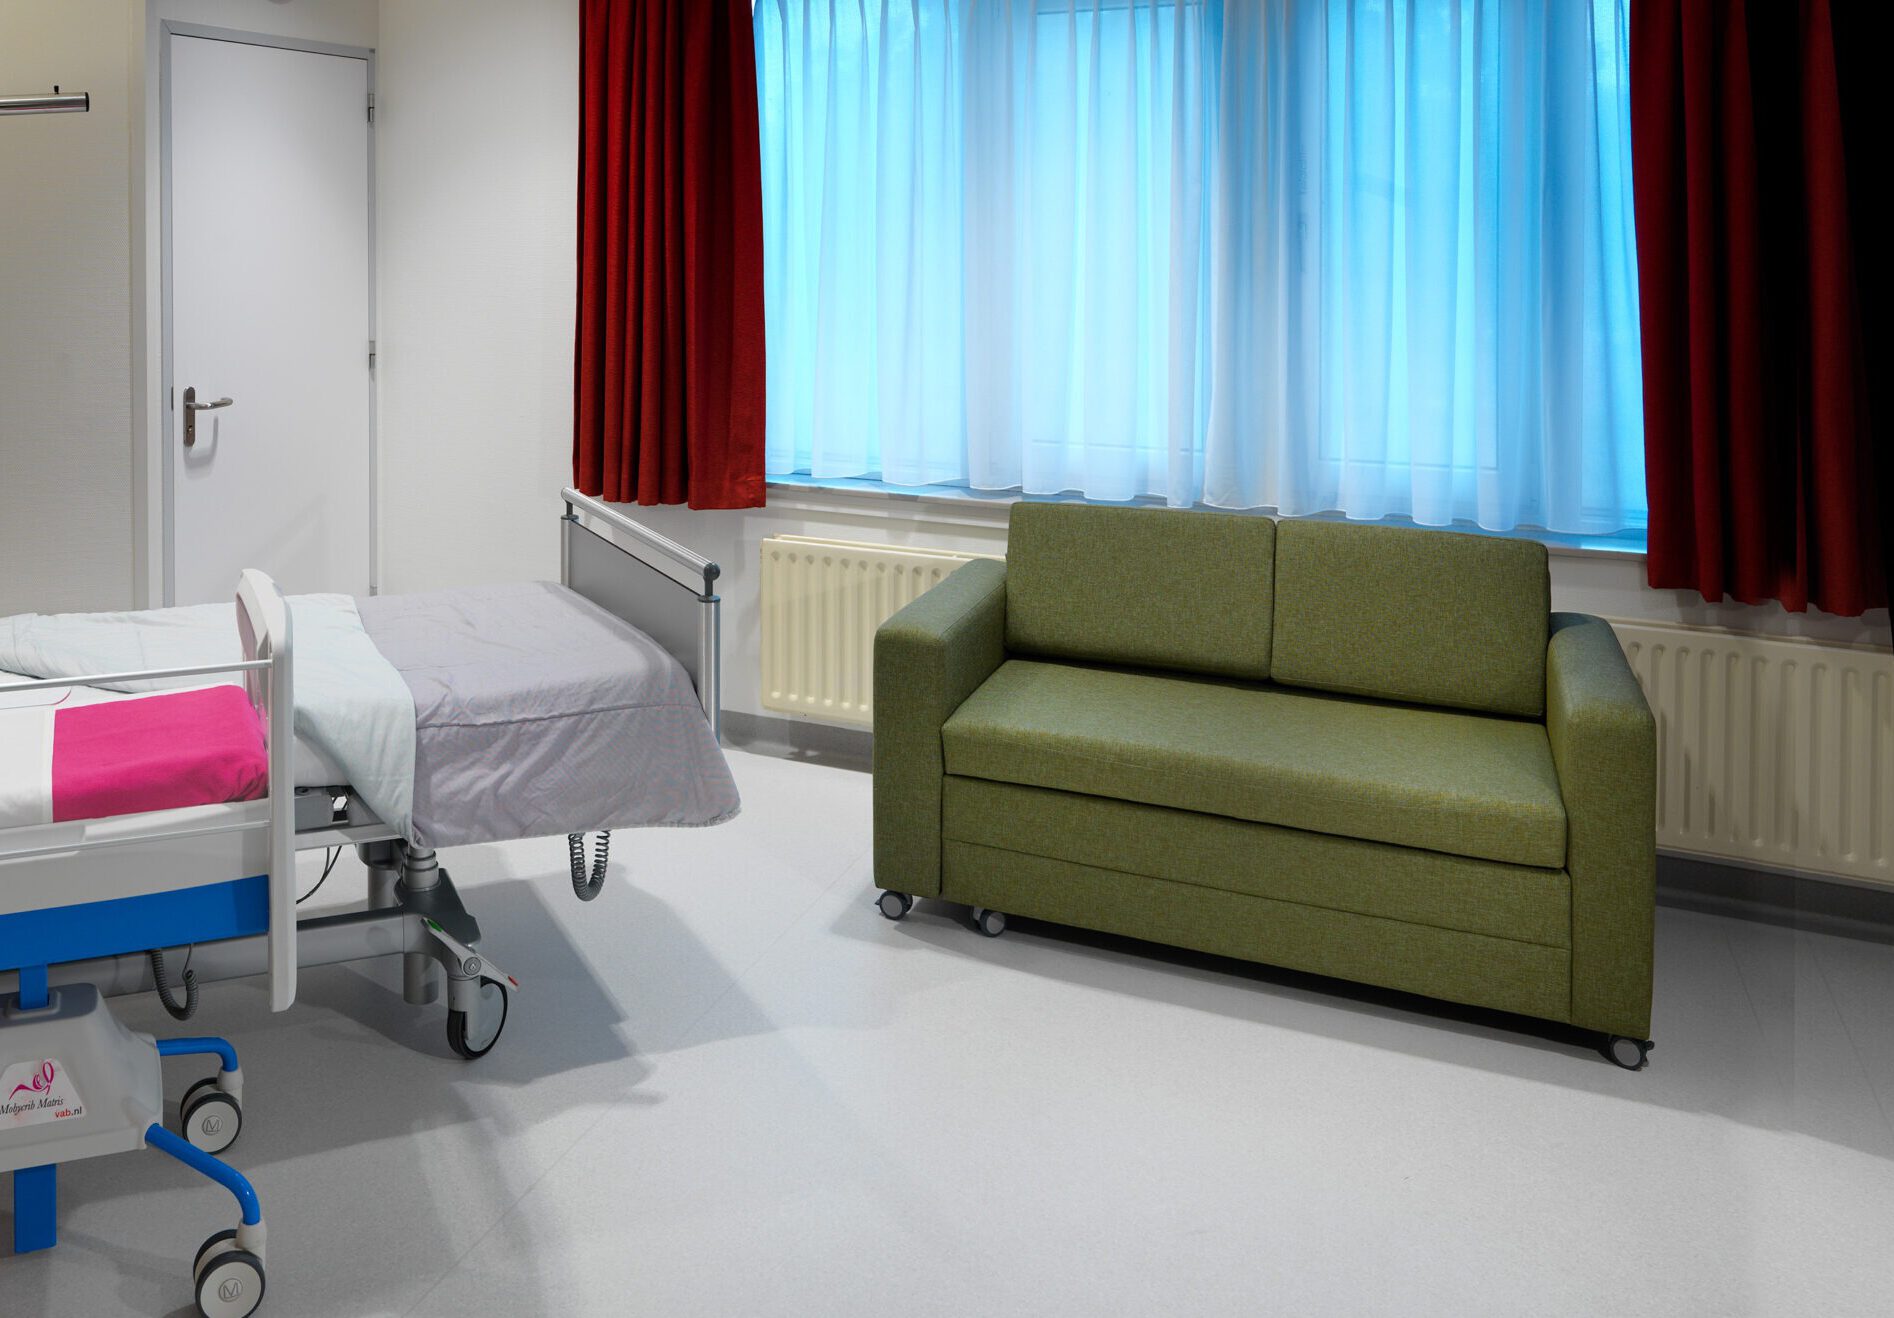 Mobysofa rooming in slaapbank in een kraamsuite in het ziekenhuis